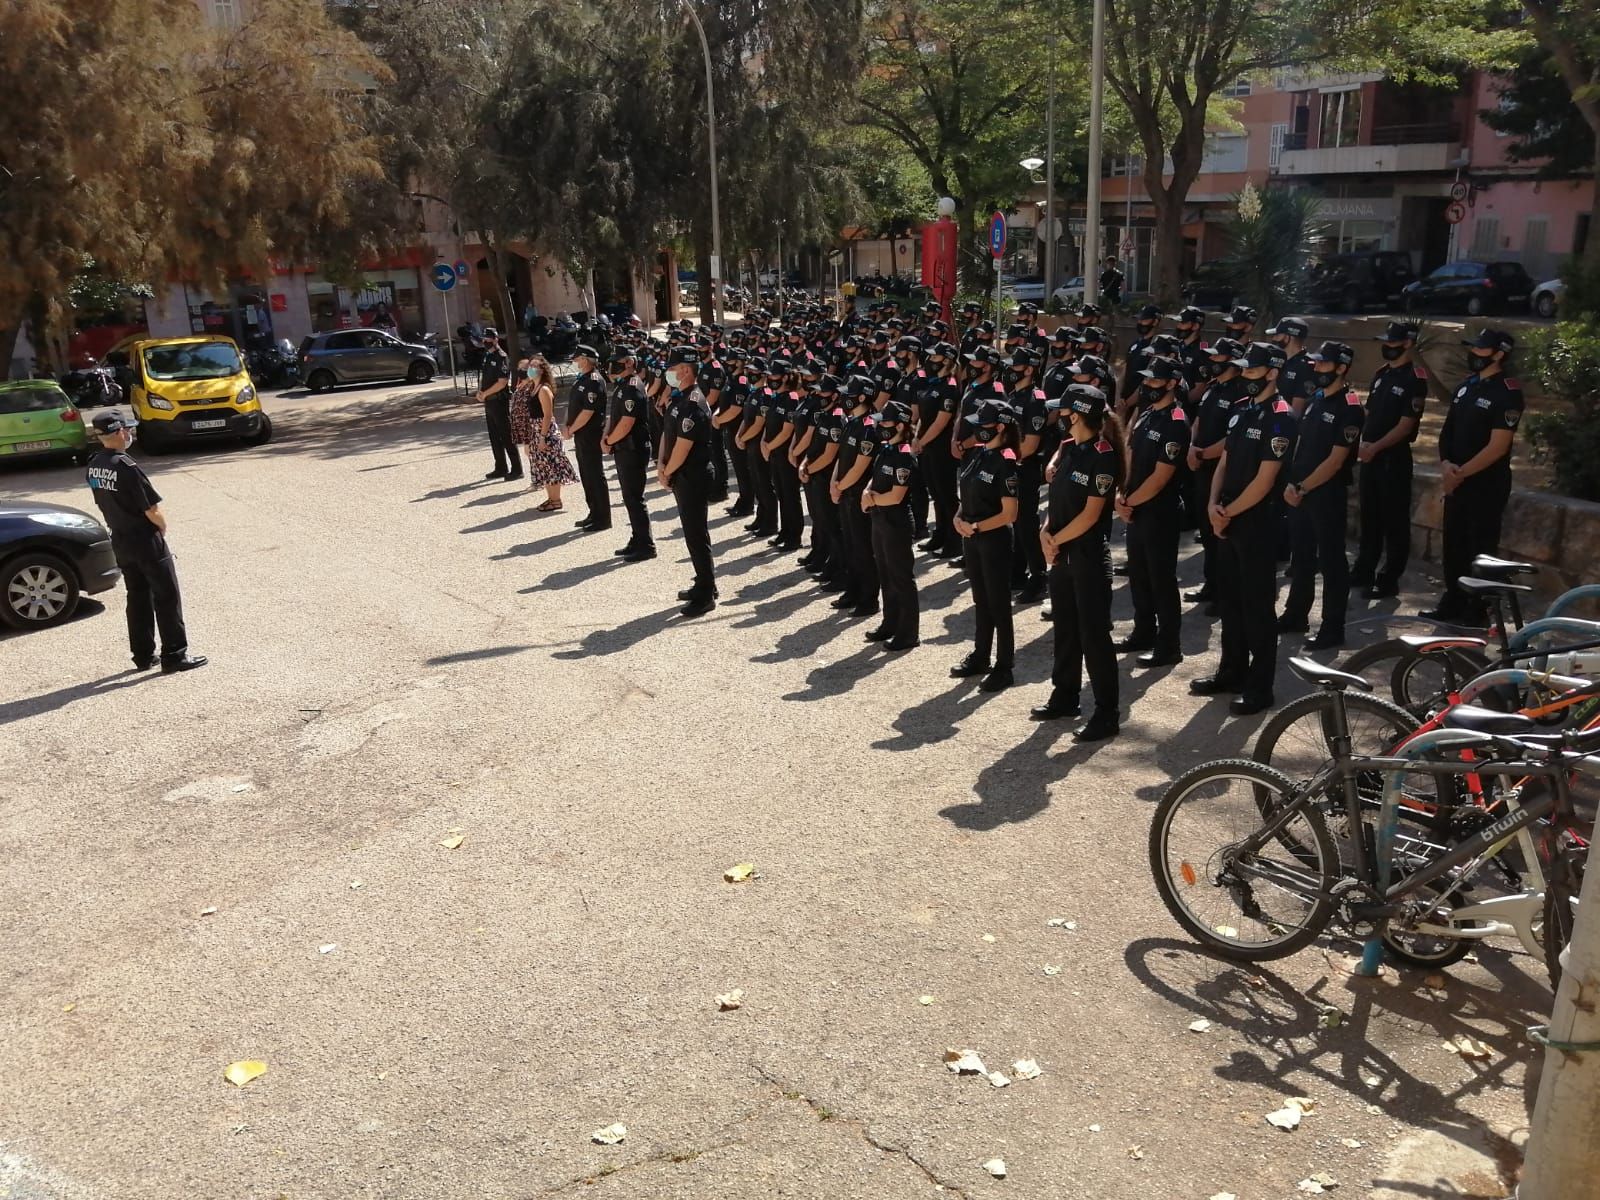 Presentan a un centenar de agentes en prácticas de la Policía Local de Palma